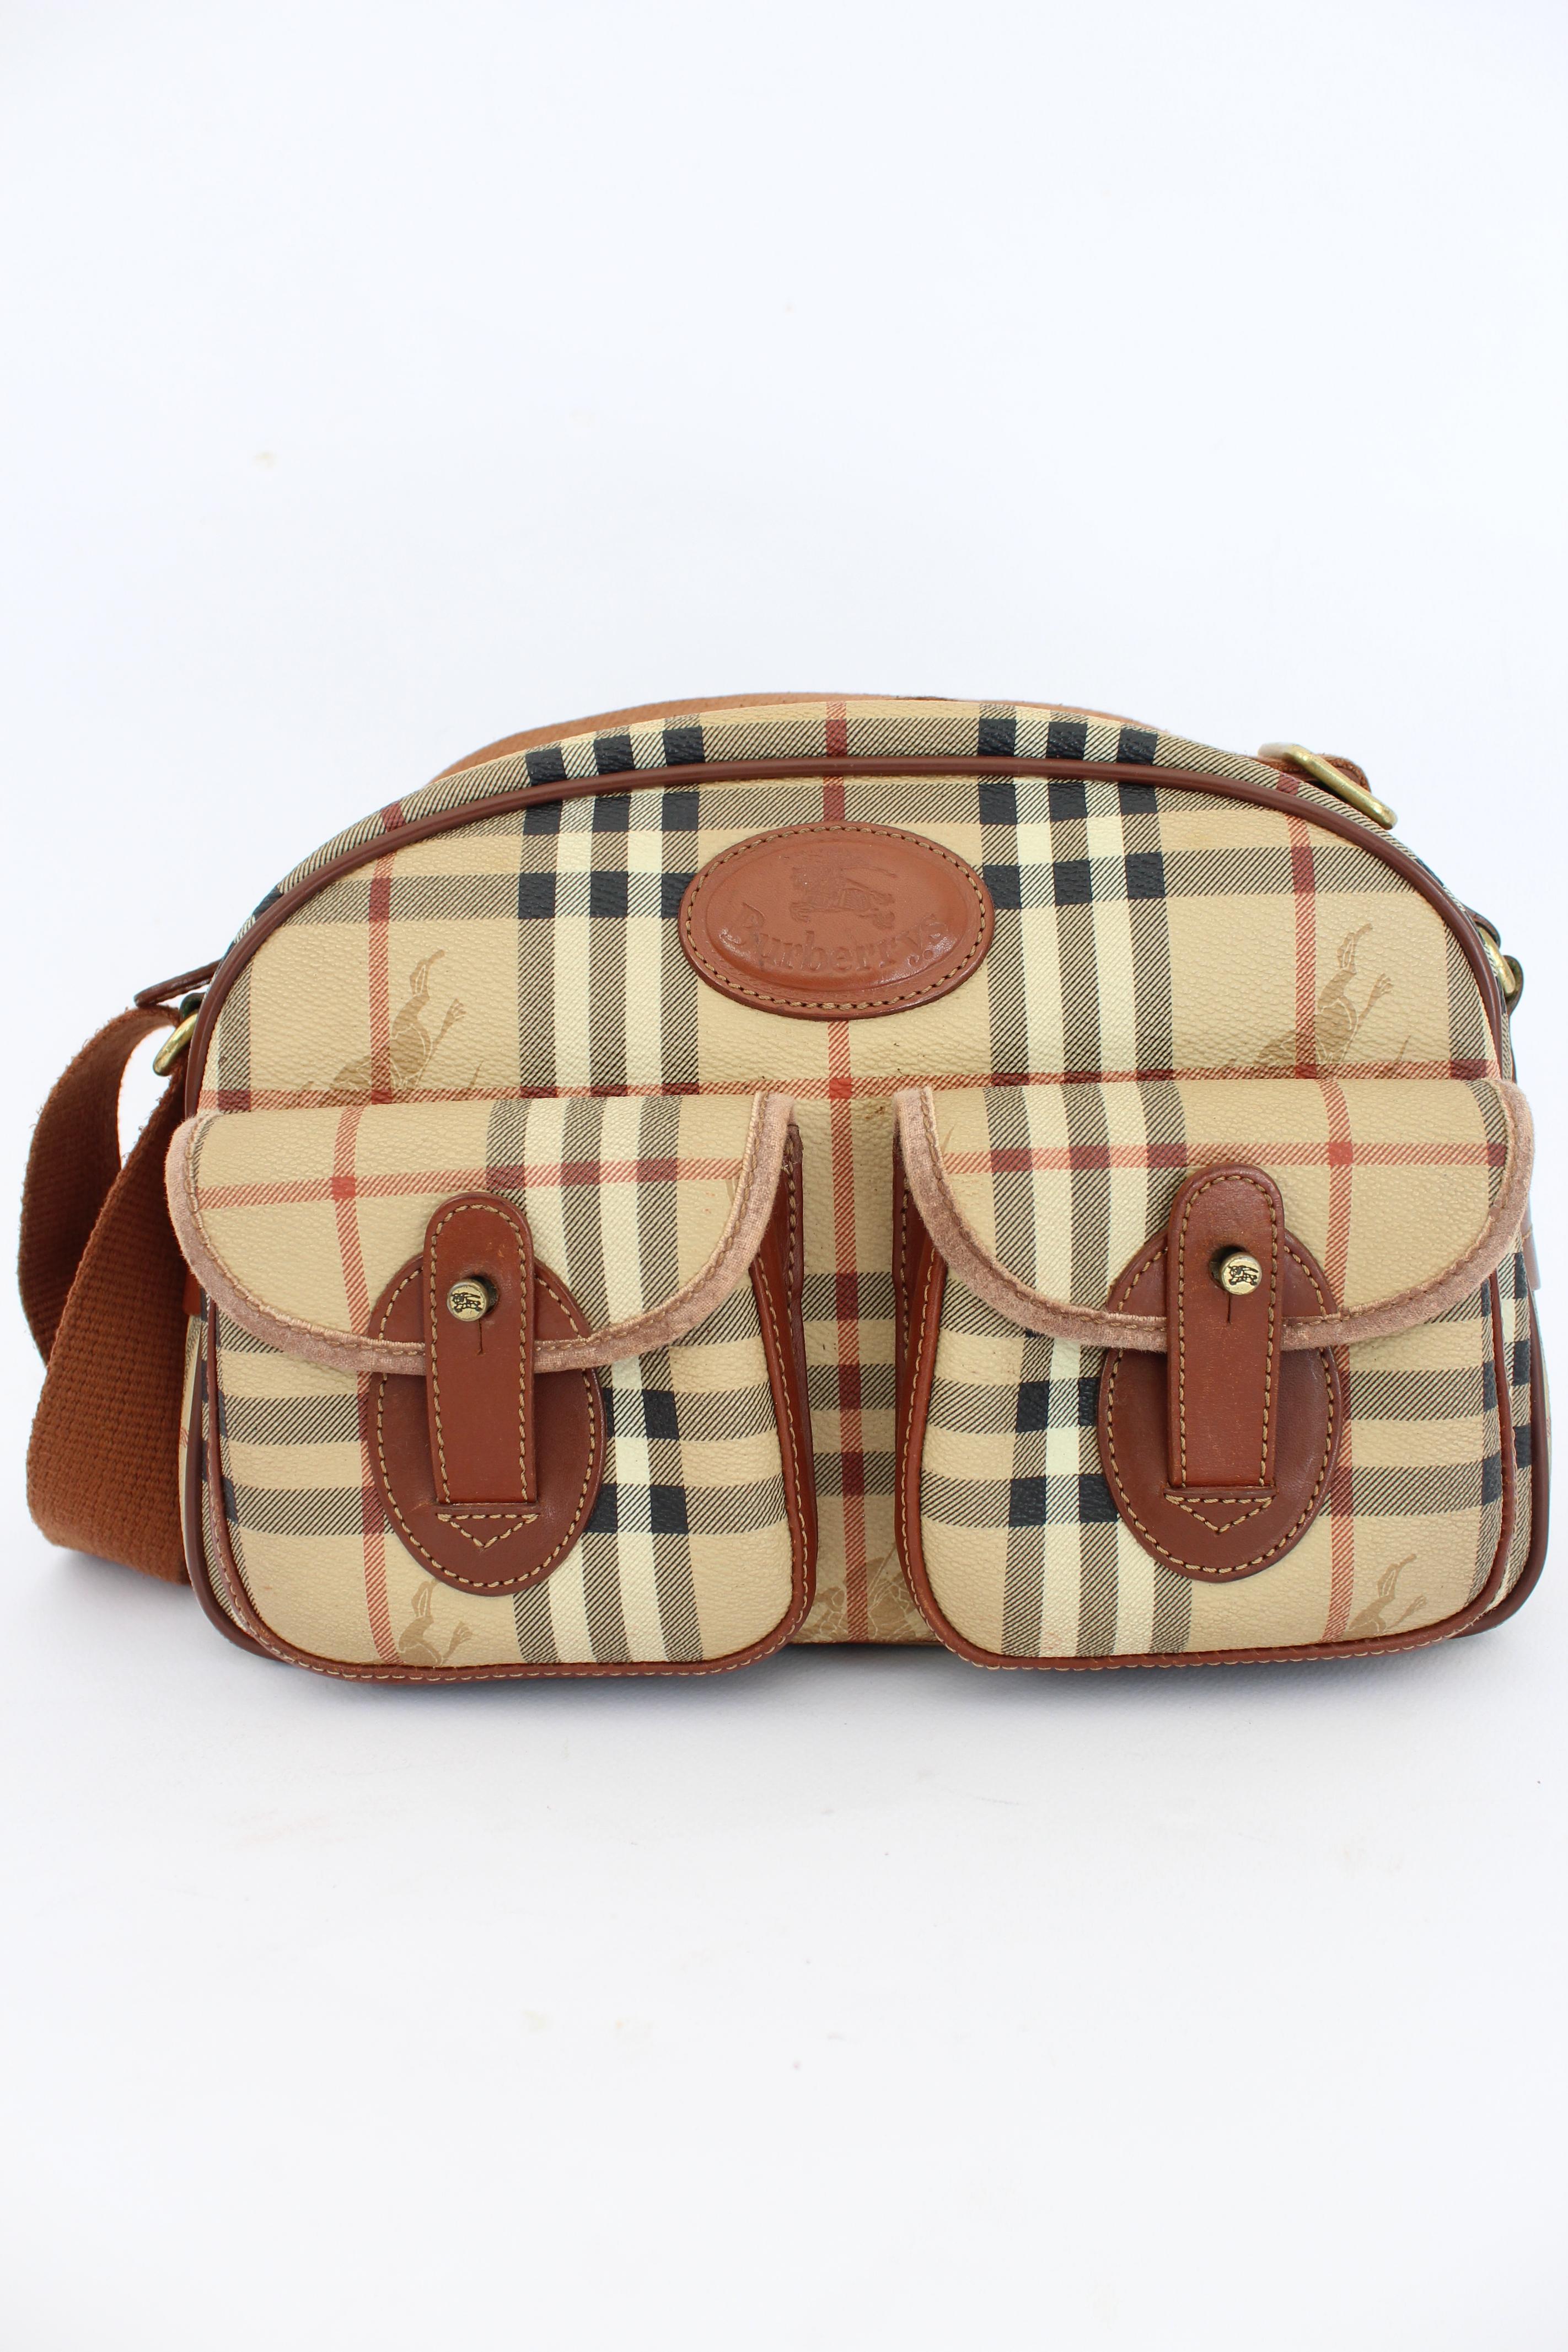 Burberry Beige Brown Leather Canvas Satchel Shoulder Bag 1